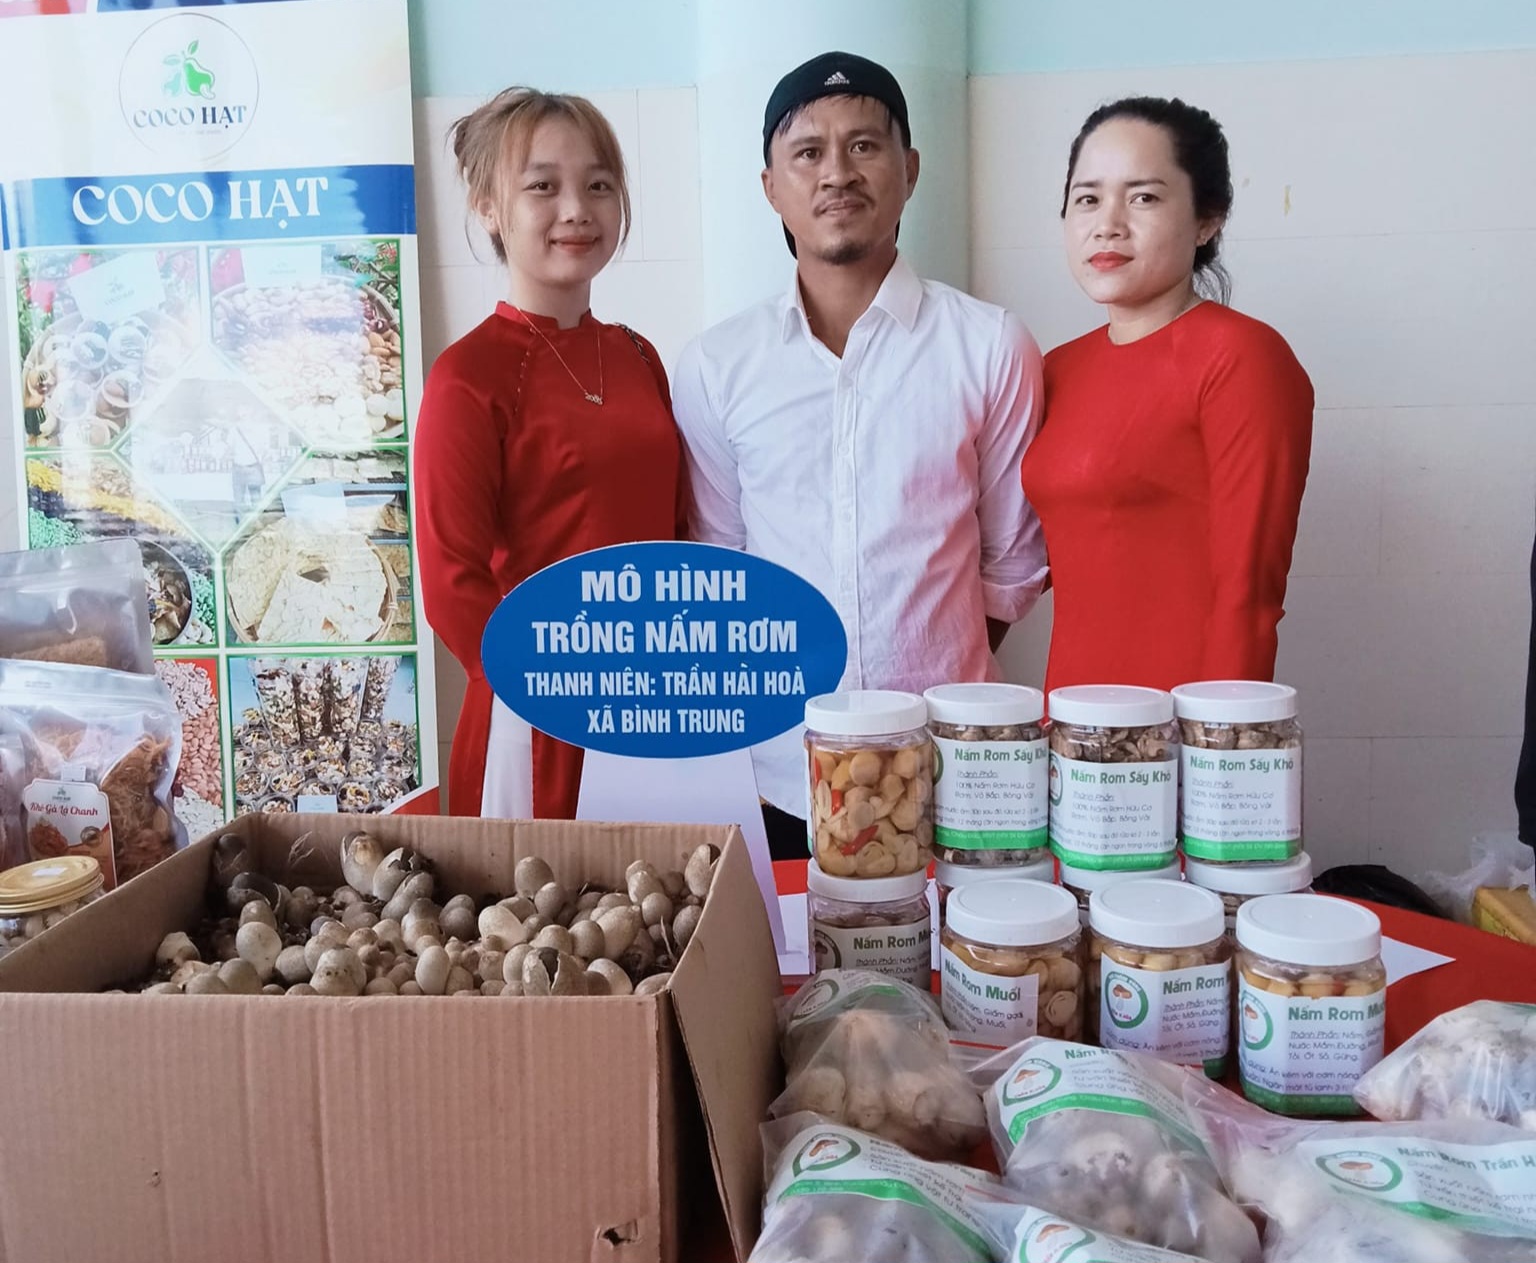 Đoàn xã Bình Trung hỗ trợ mô hình trồng nấm rơm của thanh niên  Trần Hài Hòa tham gia hội chợ kết nối giao thương được tổ chức  tại huyện Châu Đức.